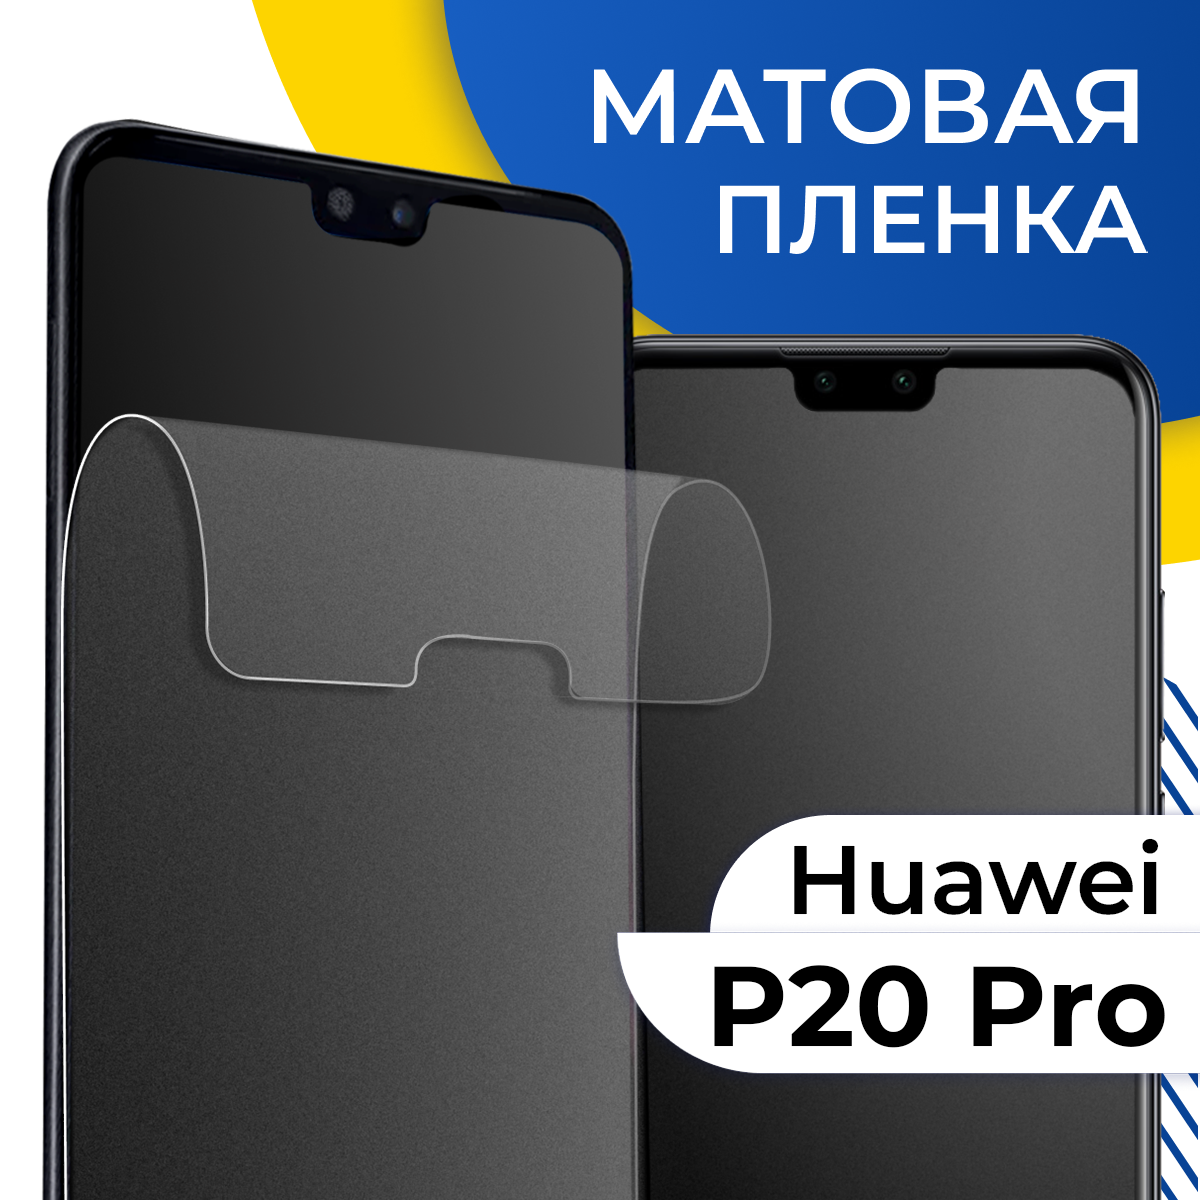 Матовая гидрогелевая пленка для телефона Huawei P20 Pro / Самовосстанавливающаяся защитная пленка на смартфон Хуавей Р20 Про / Противоударная